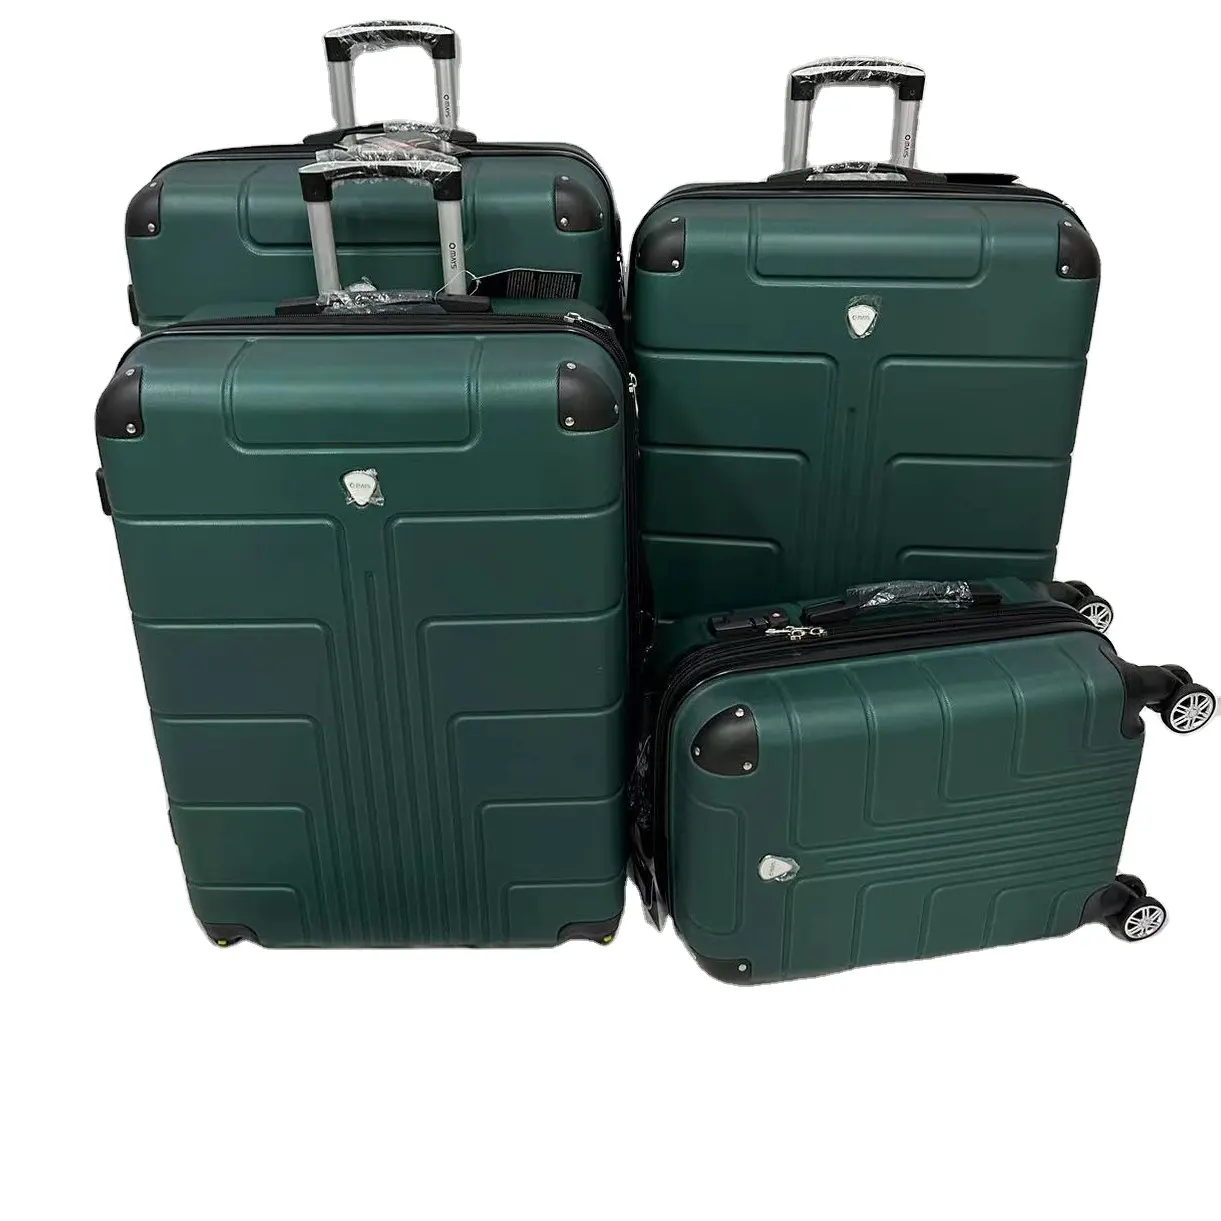 Vente en gros nouveau design bagage rigide ABS 4 pcs ensembles avec roue Trolley sacs sacs de voyage bagages pour femmes